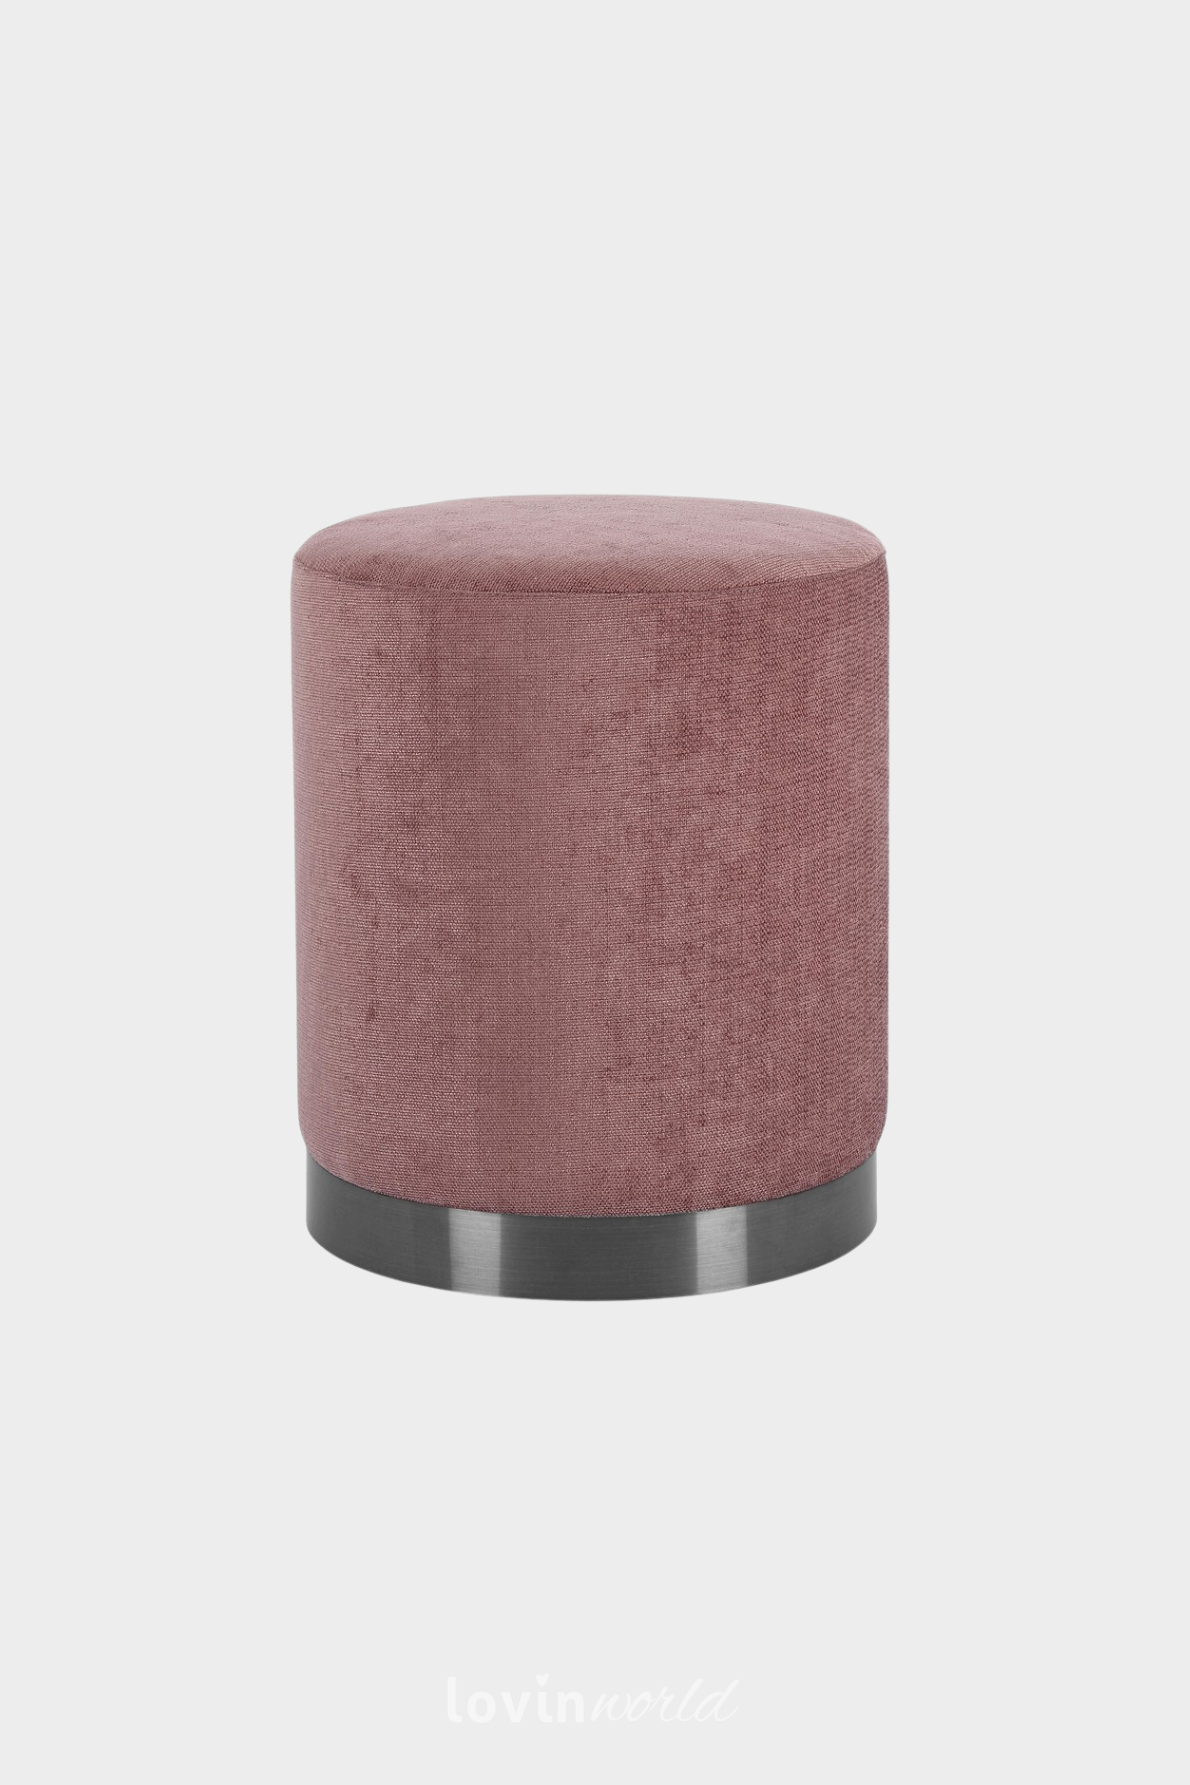 Pouf contenitore Worry, in colore rosa 35x60 cm.